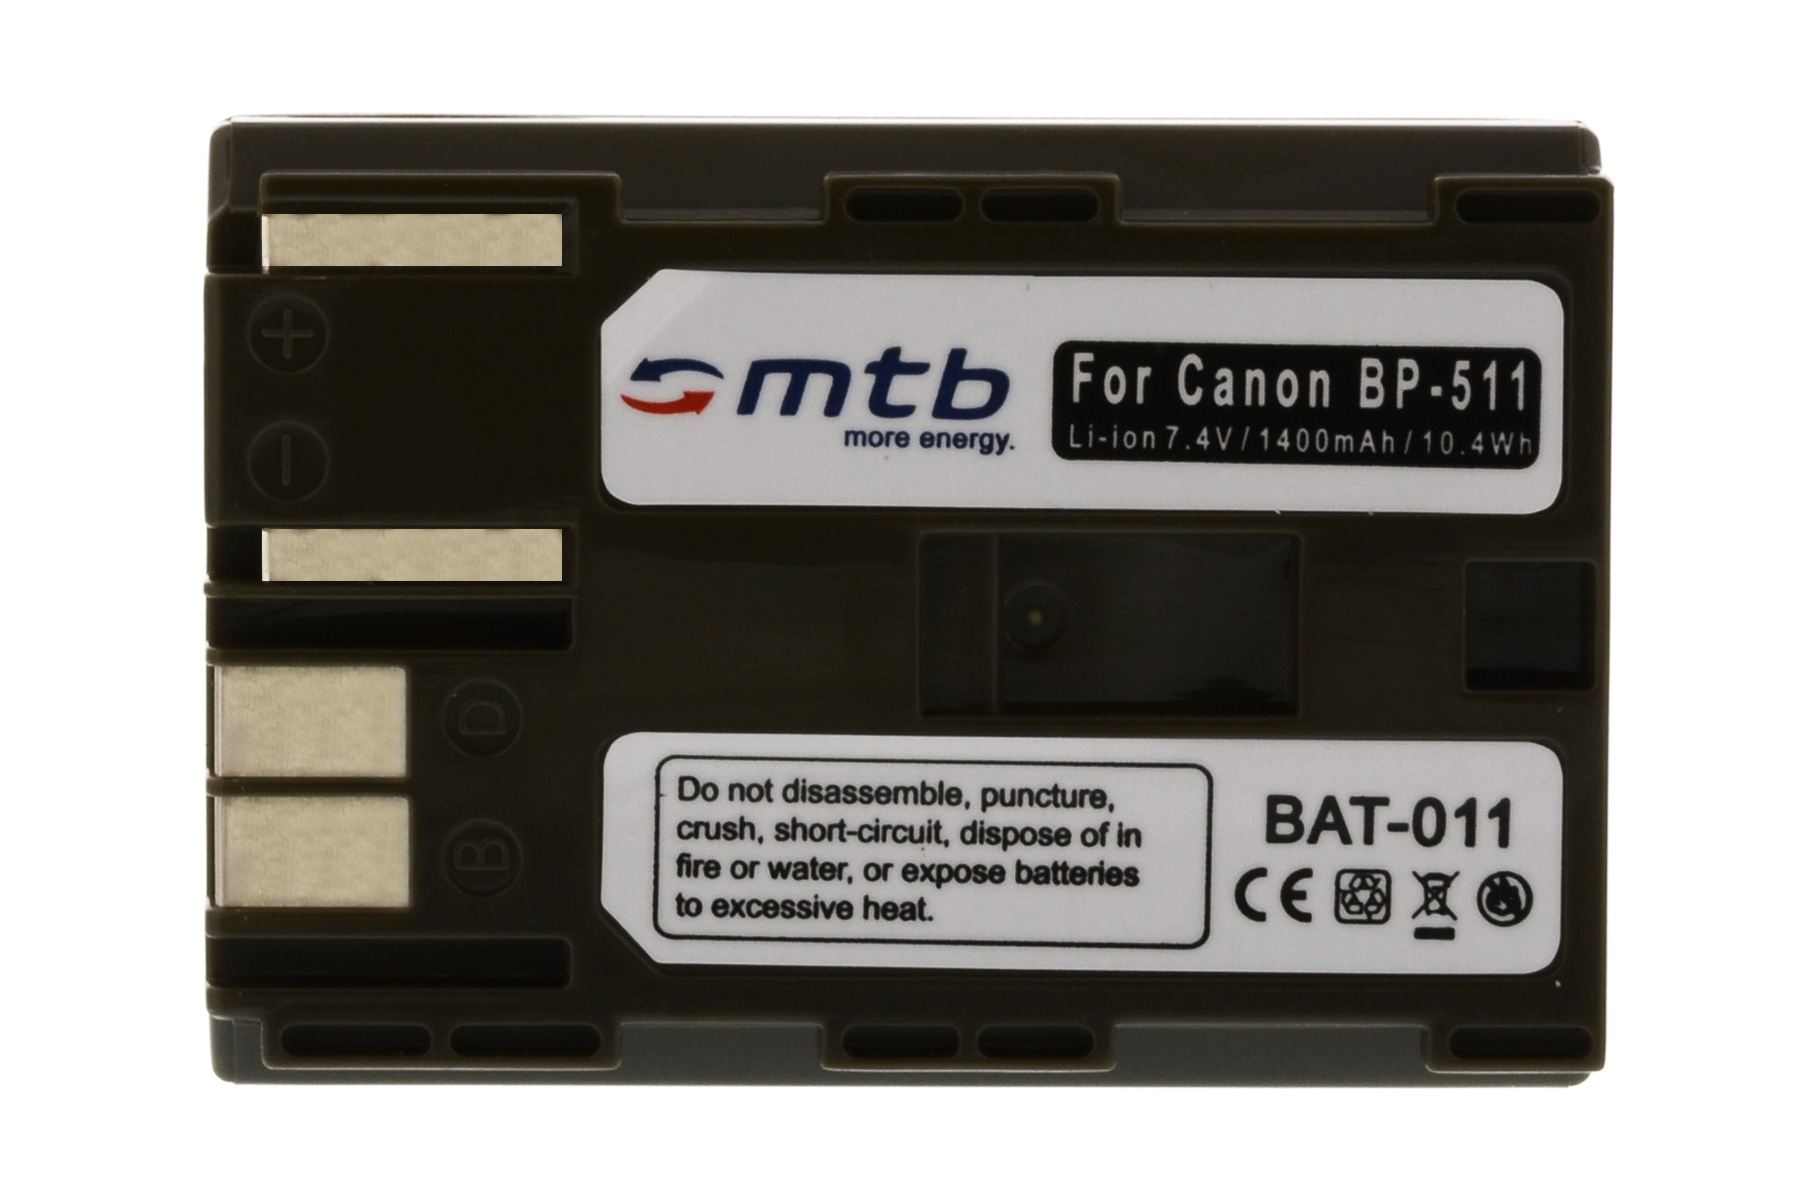 BAT-011 BP-511 Akku, MTB 1400 2x ENERGY MORE mAh Li-Ion,